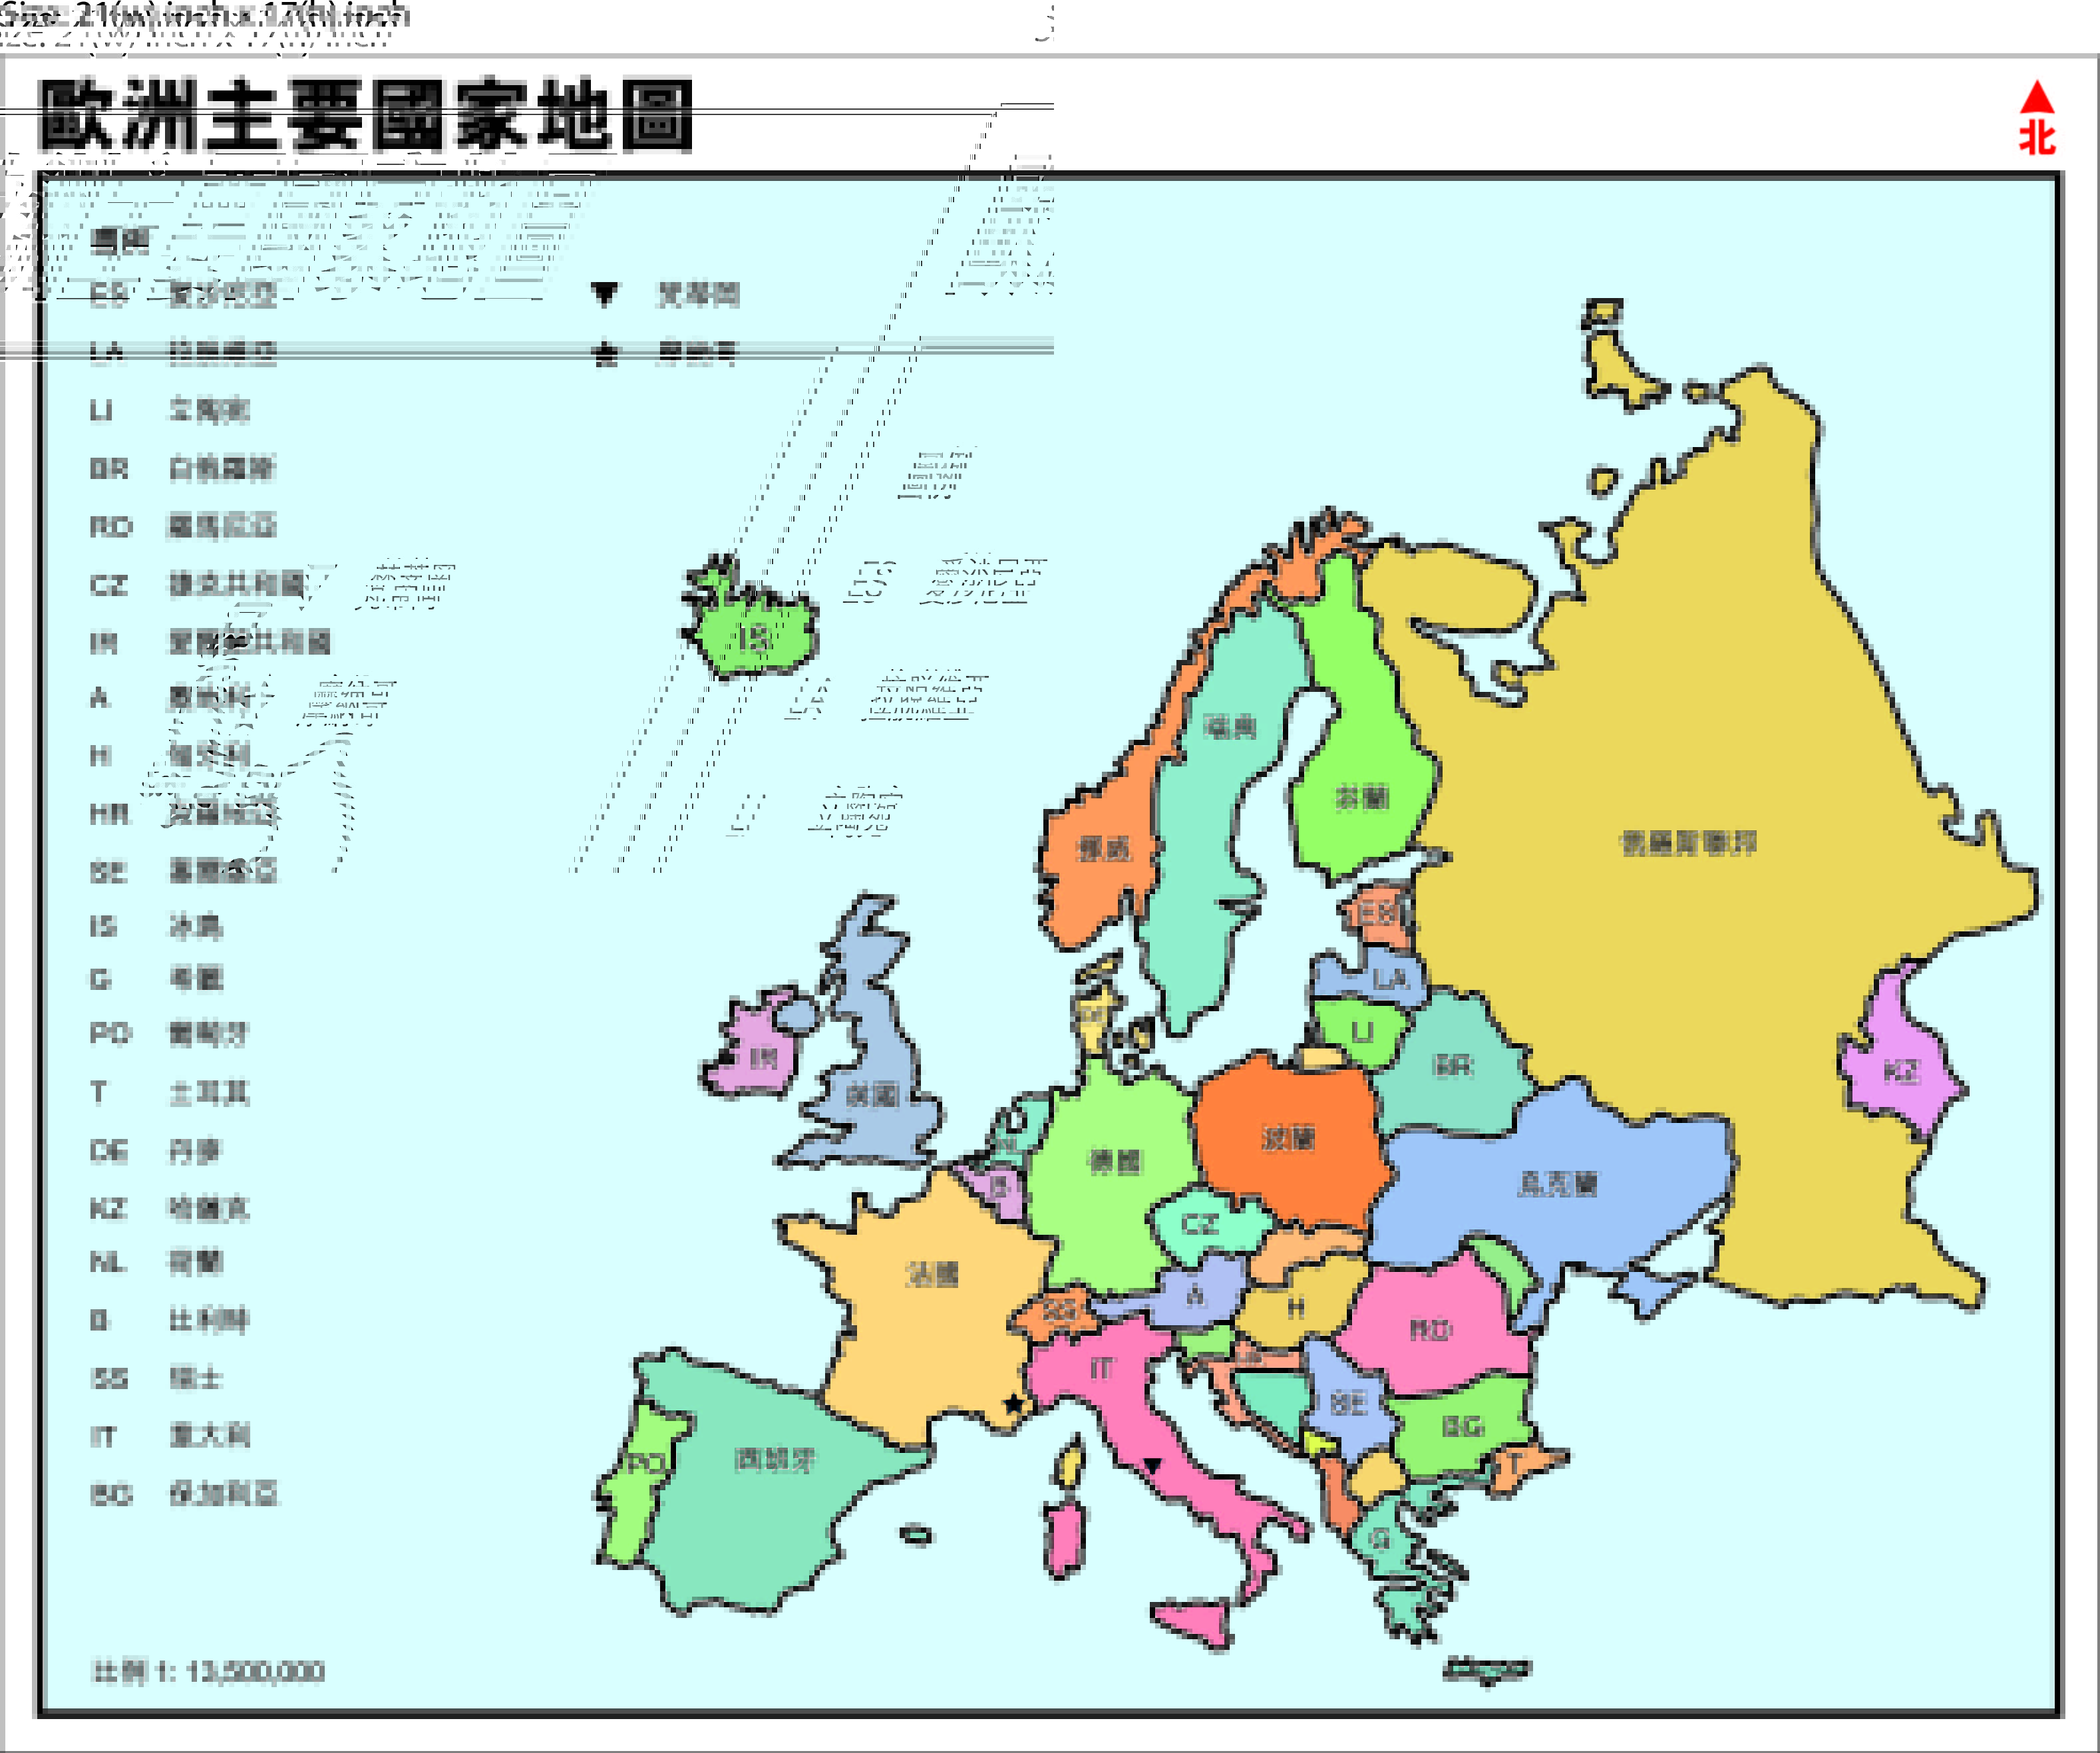 欧洲地图_欧洲地图高清版大图_地图窝